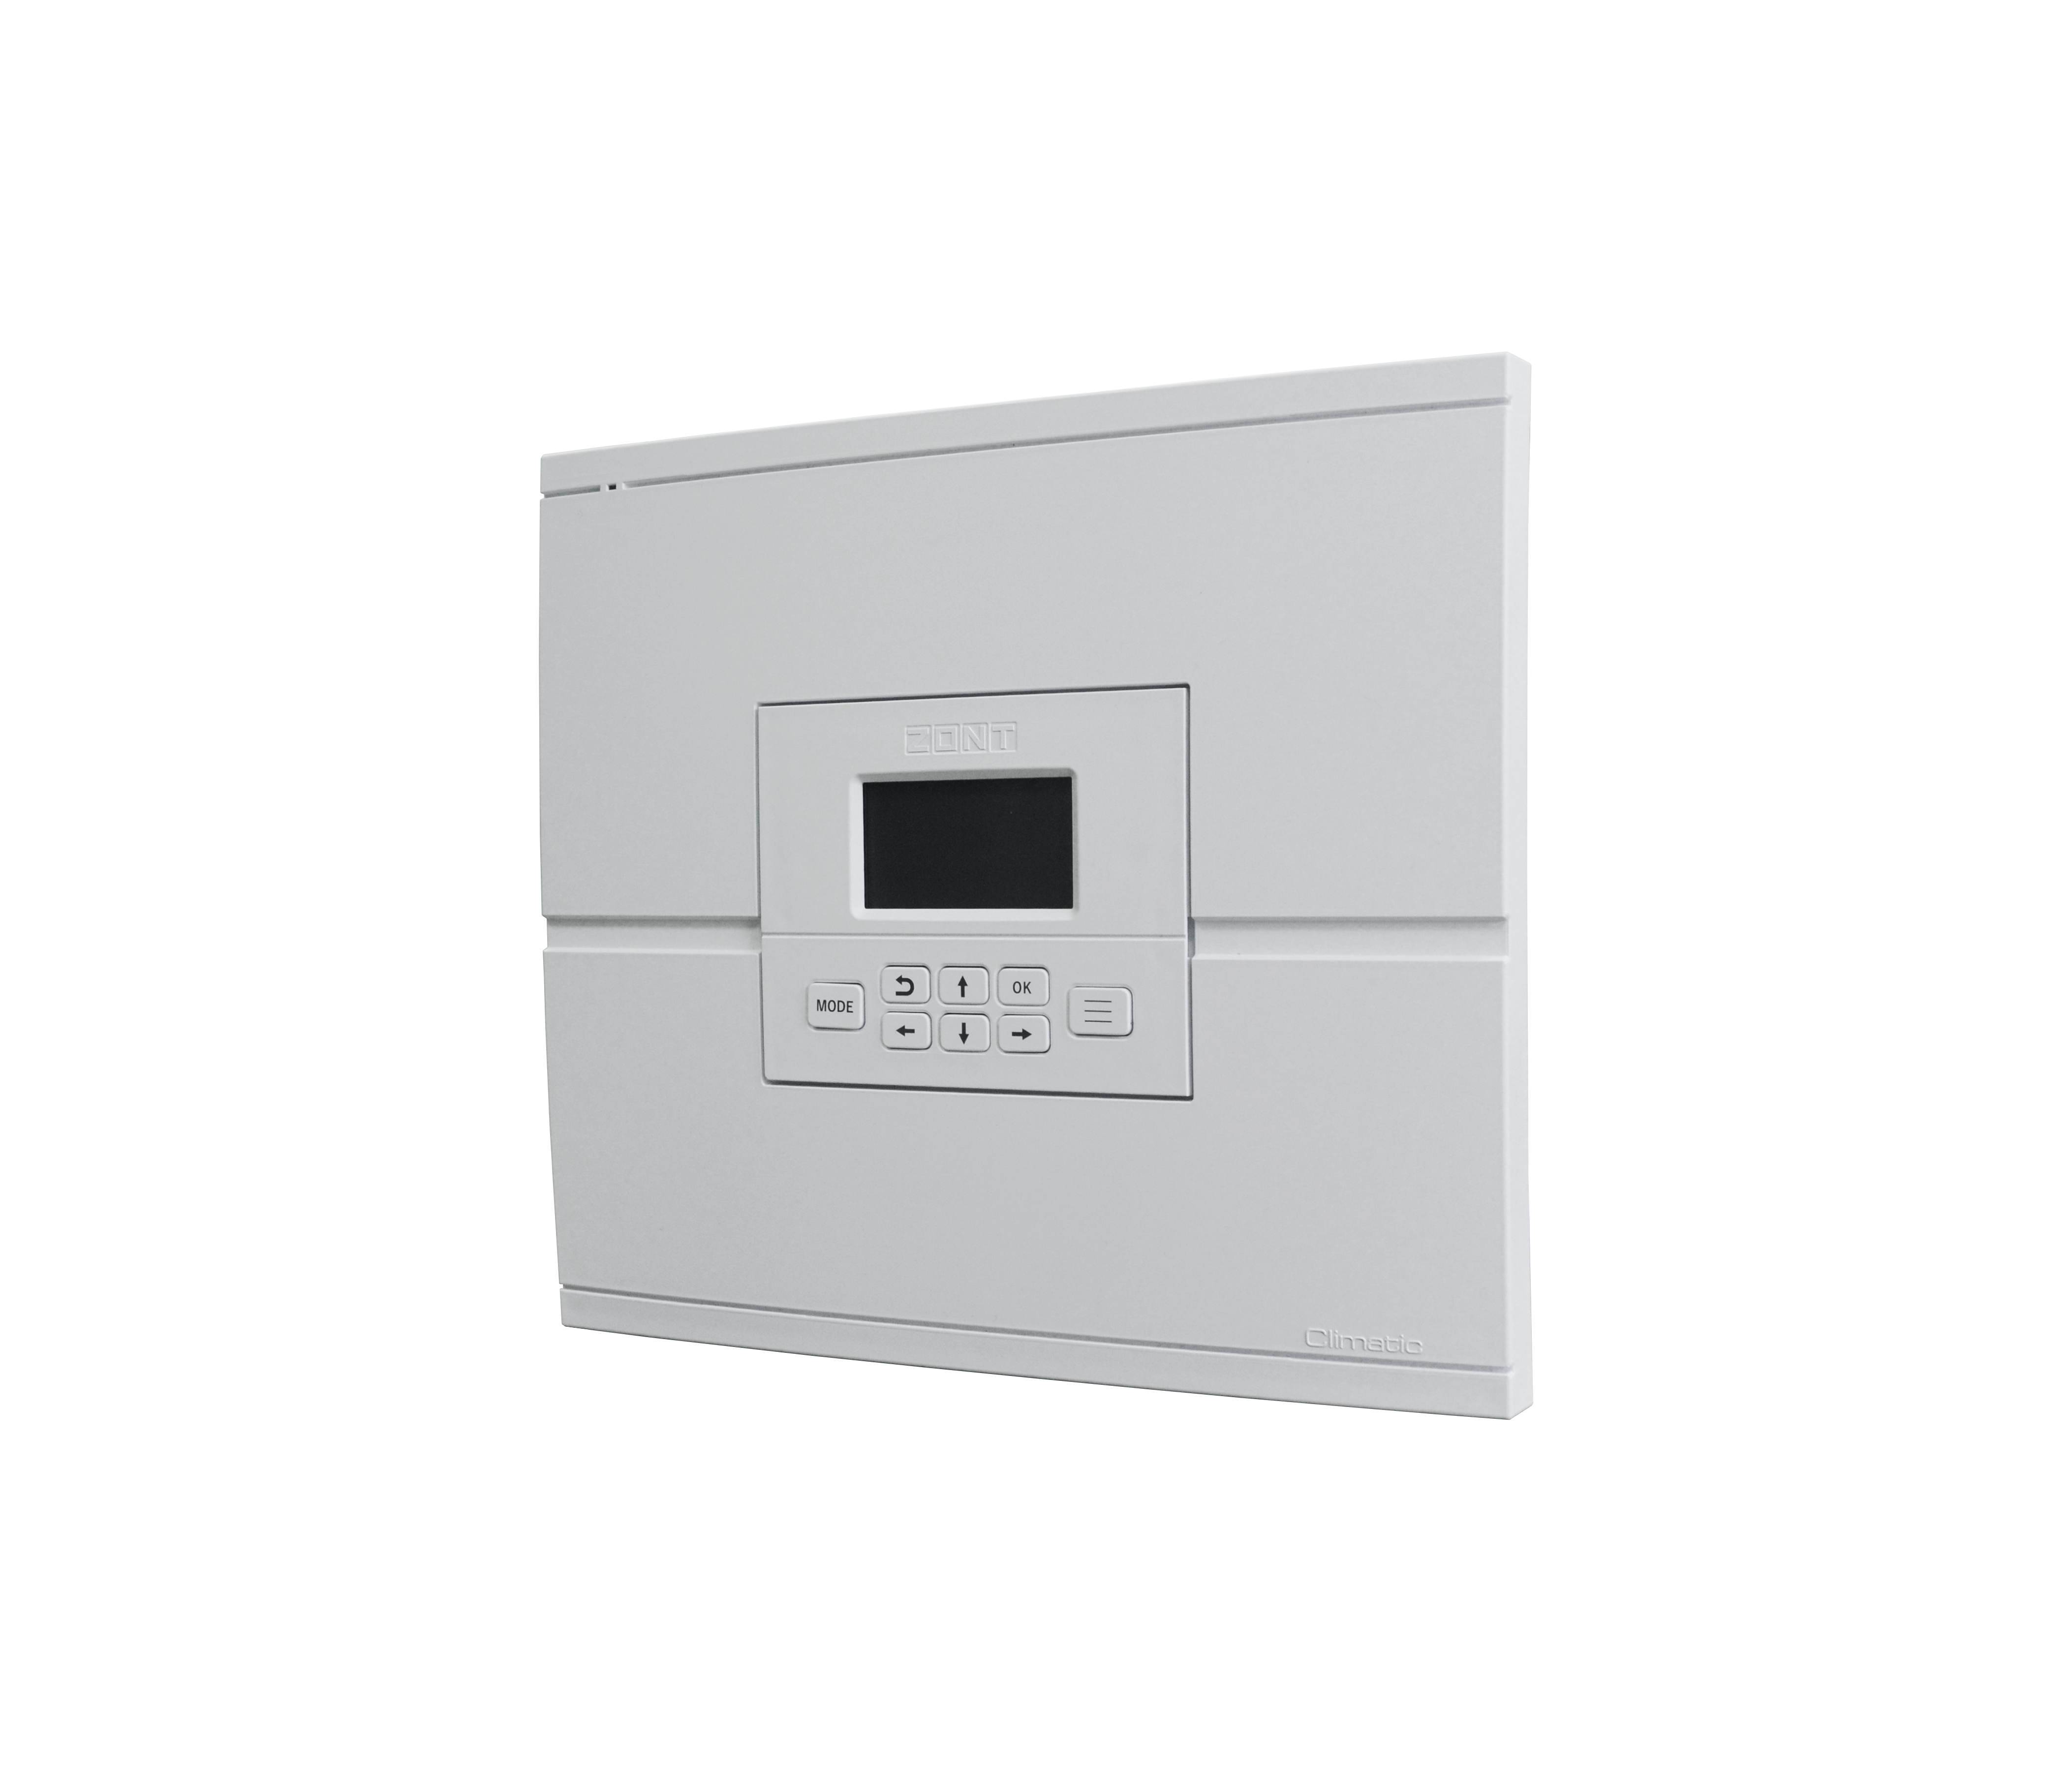 Погодозависемый автоматический регулятор для многоконтурных систем отопления ZONT Climatic 1.2 (741)